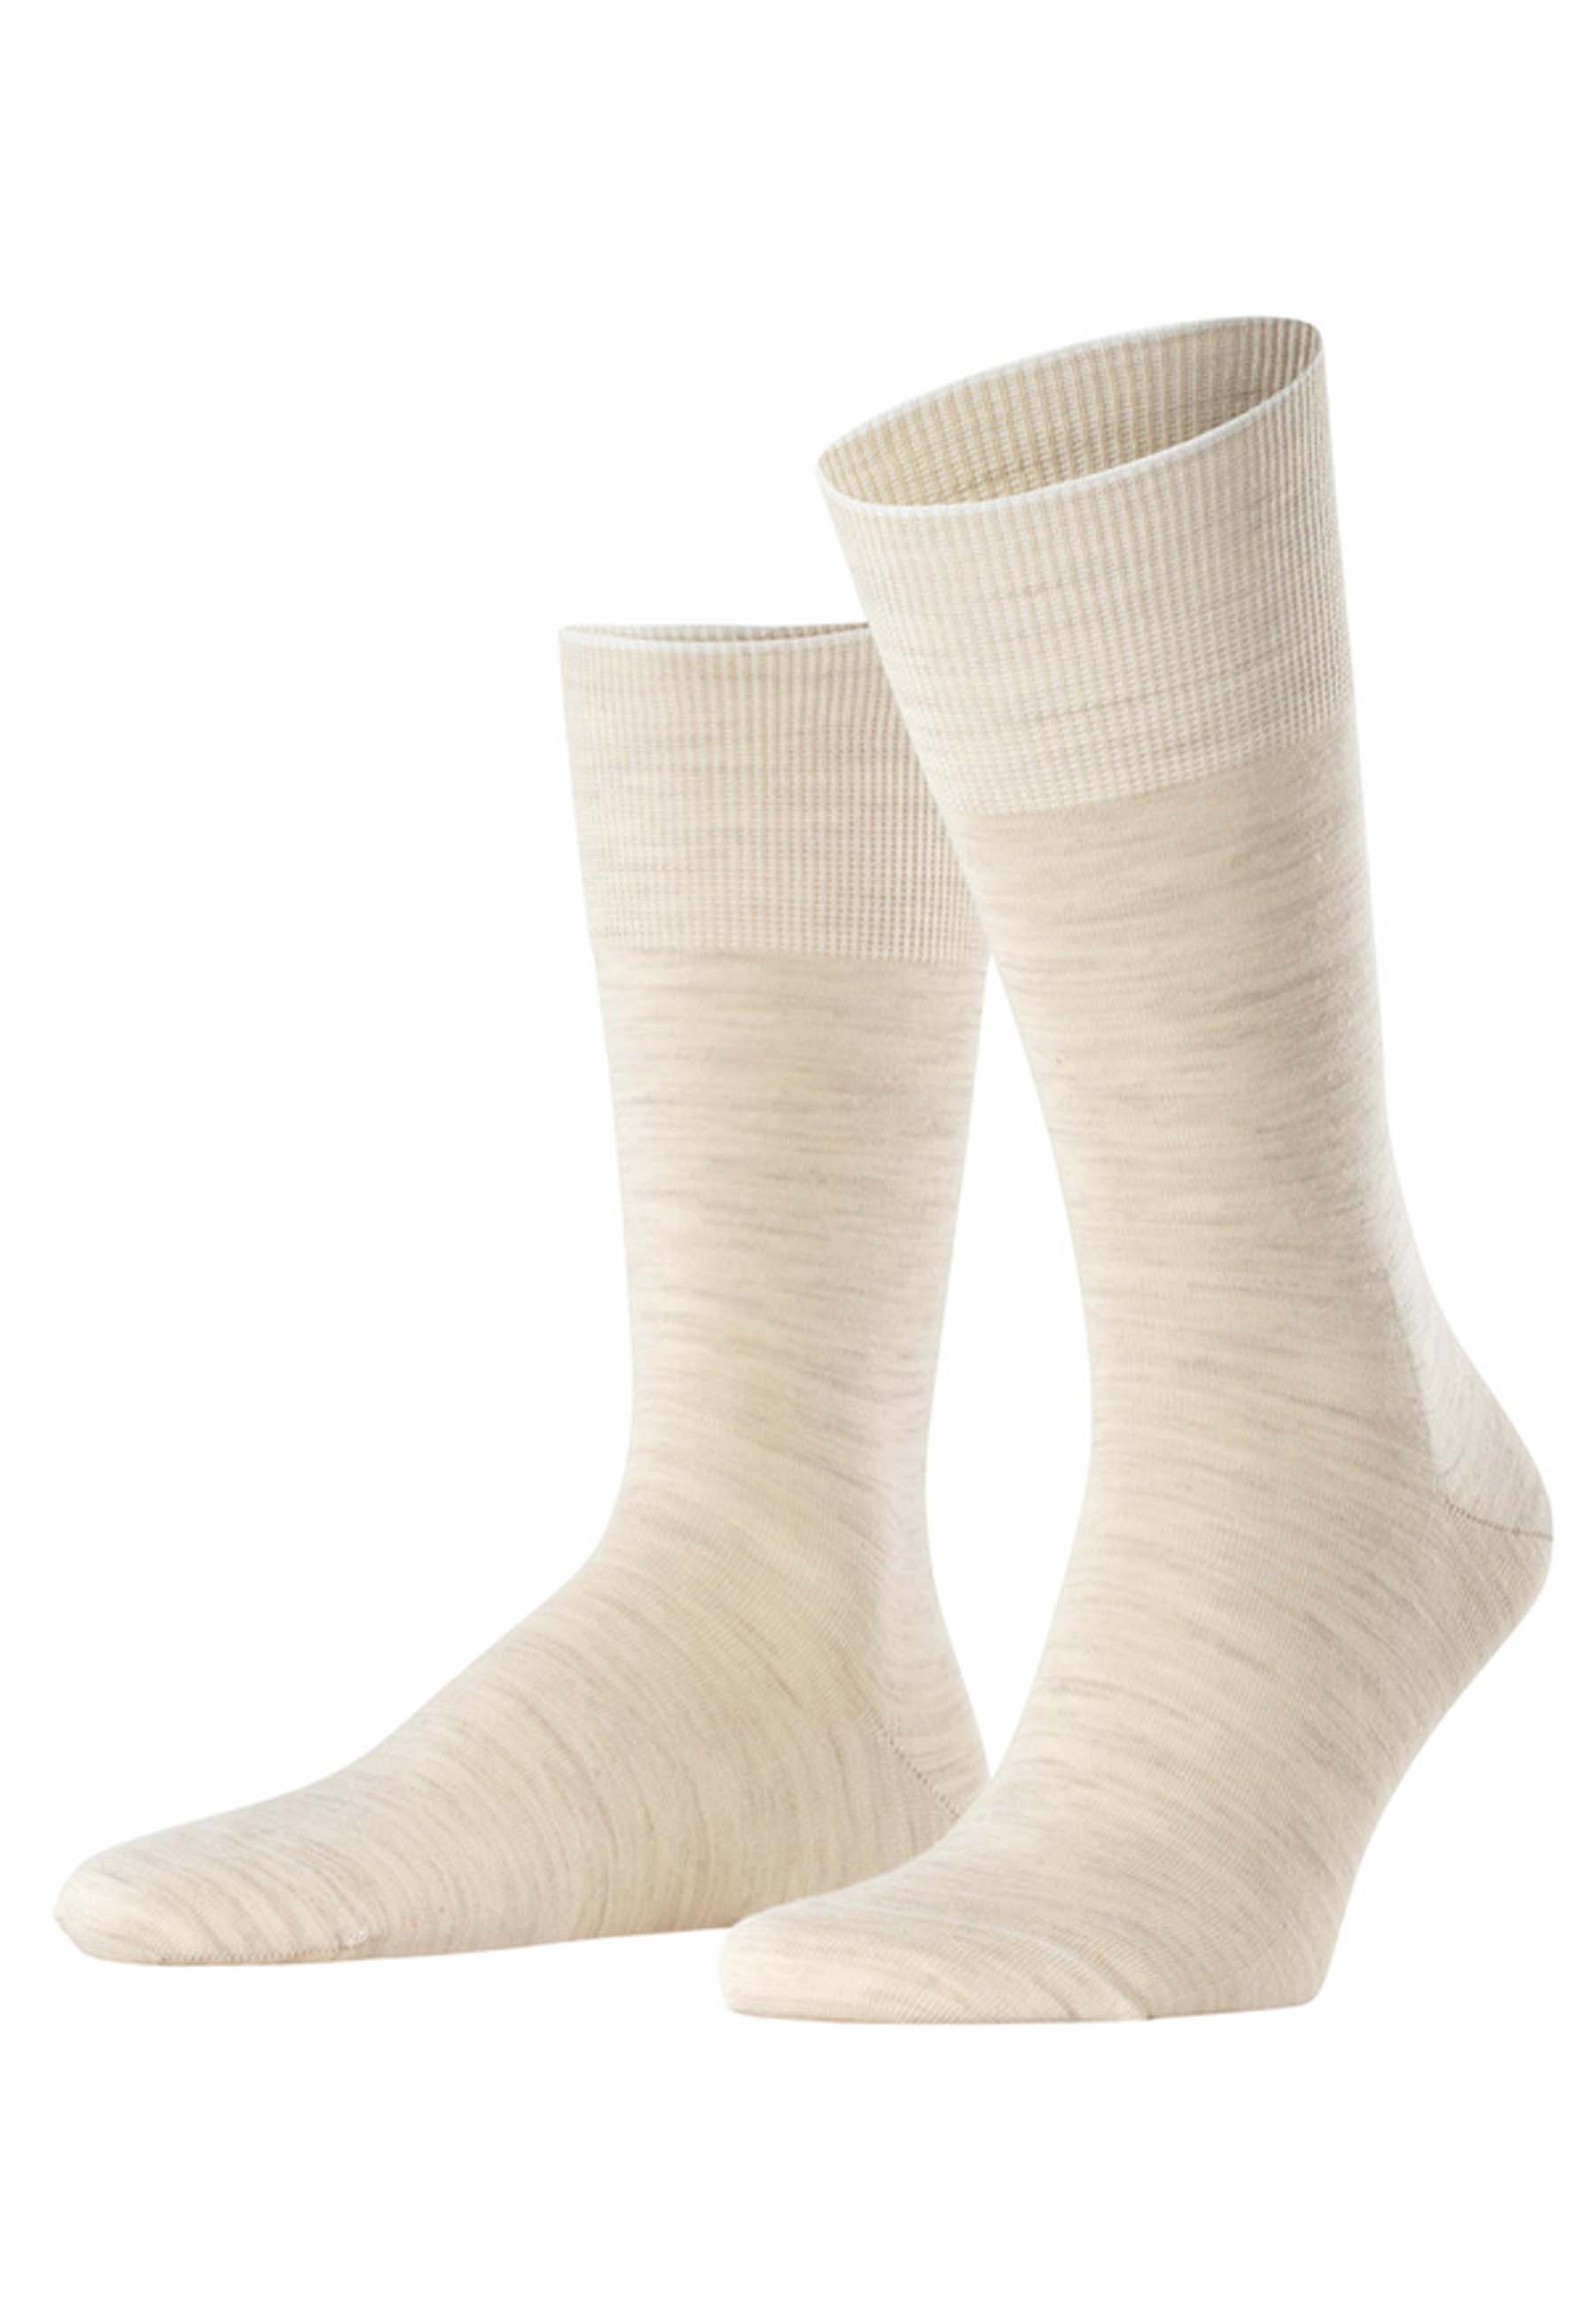 FALKE Sokken Beige Wol maat 43-44 hoge sokken beige